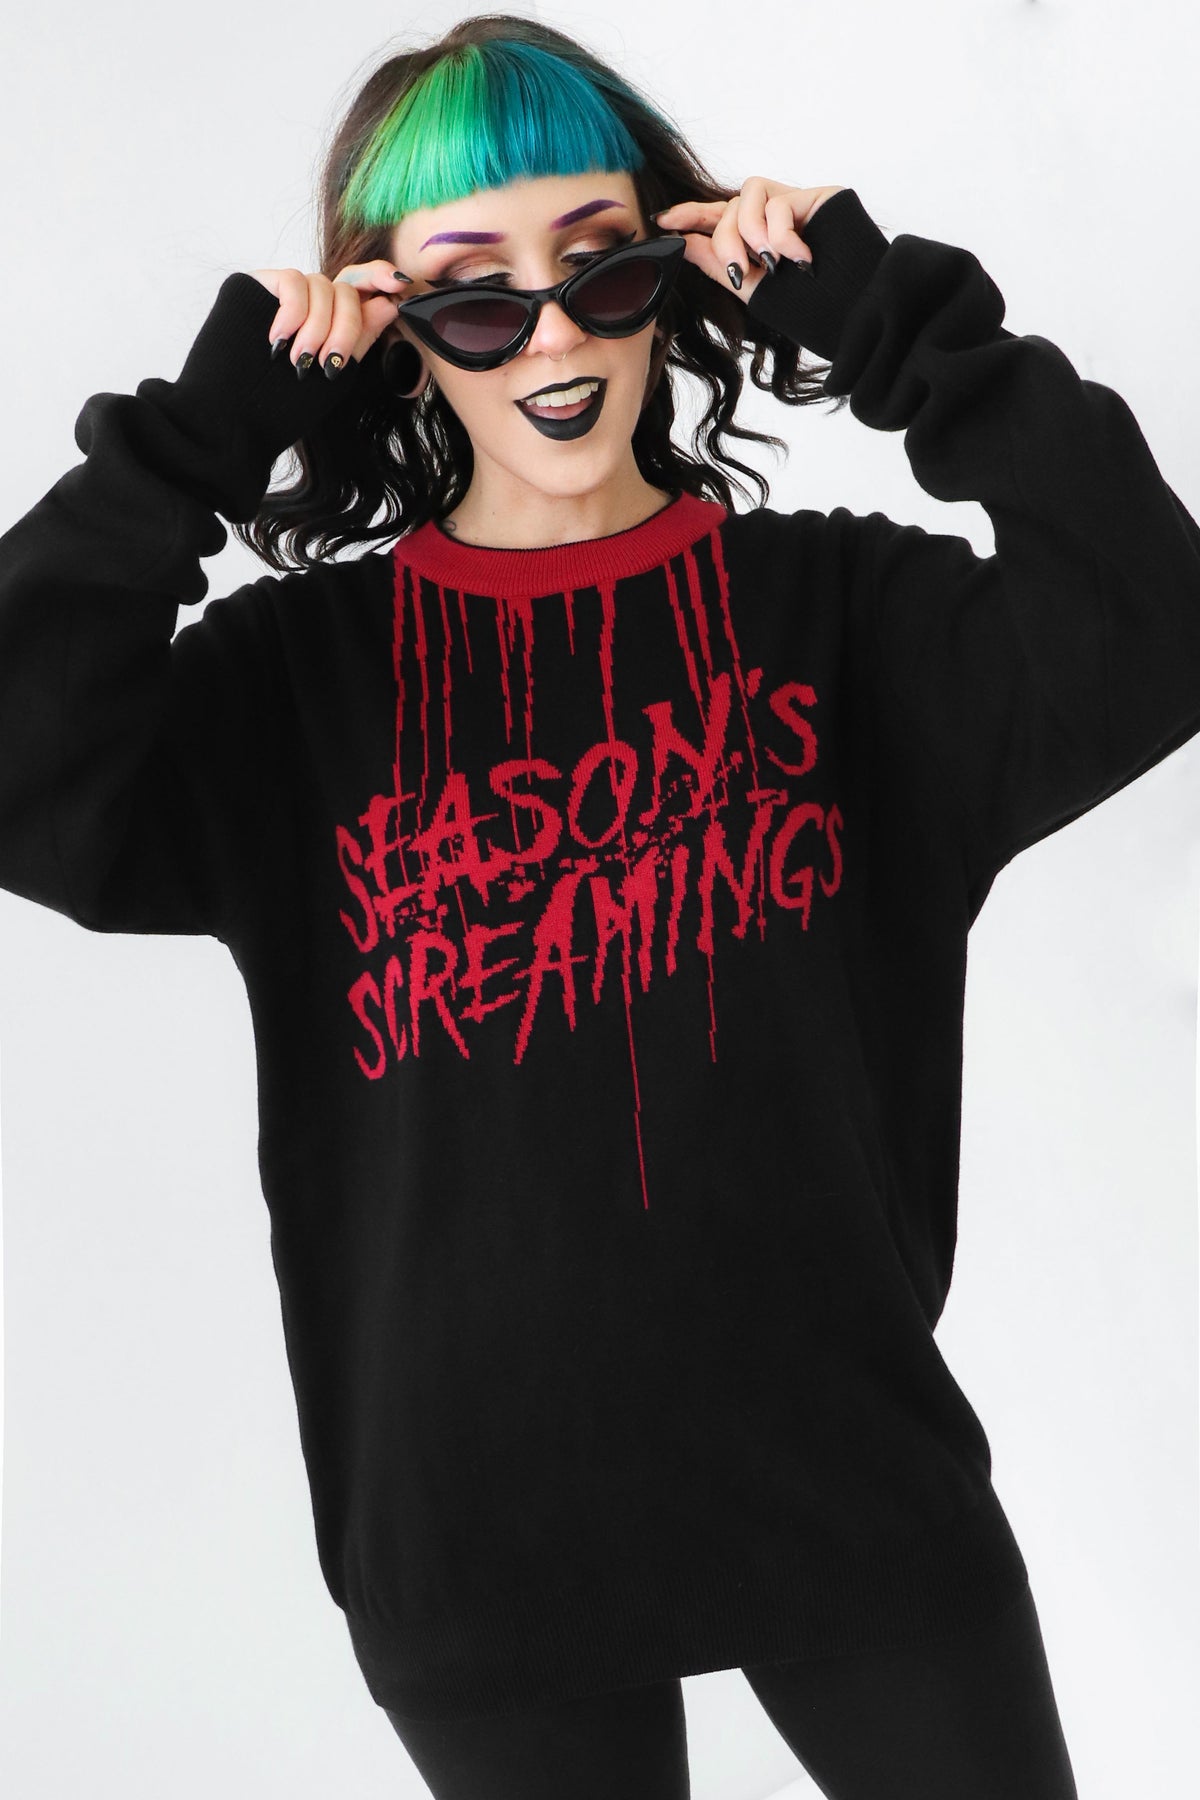 Season's Screamings Sweater - Size XS left!